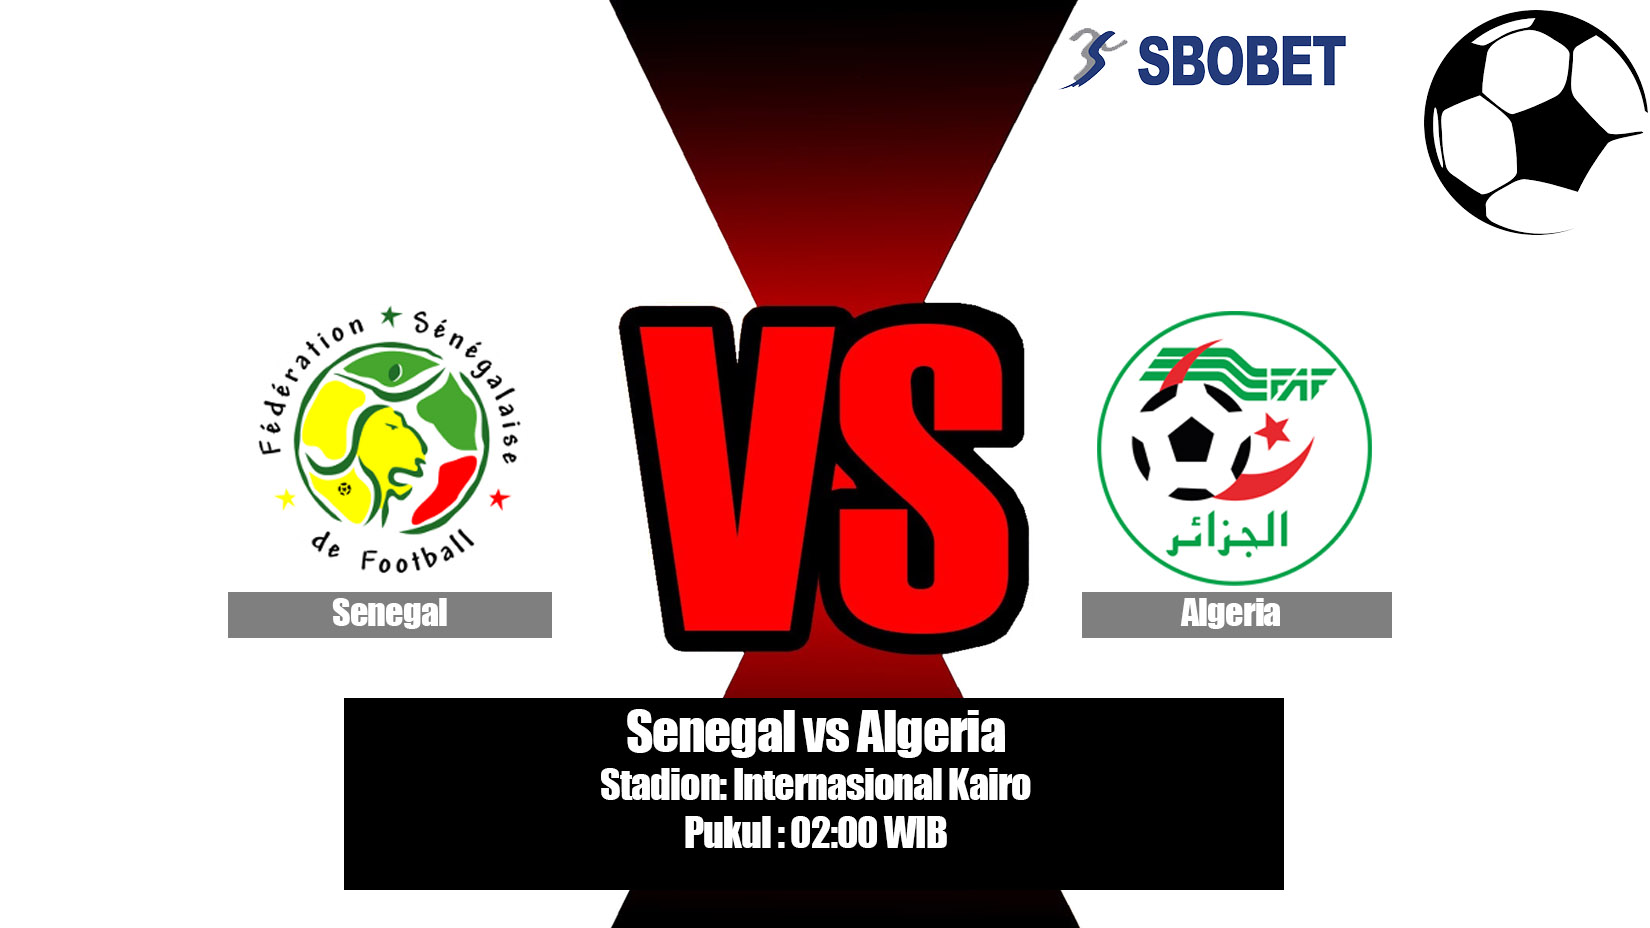 Prediksi Bola Senegal vs Algeria 20 Juli 2019.jpg